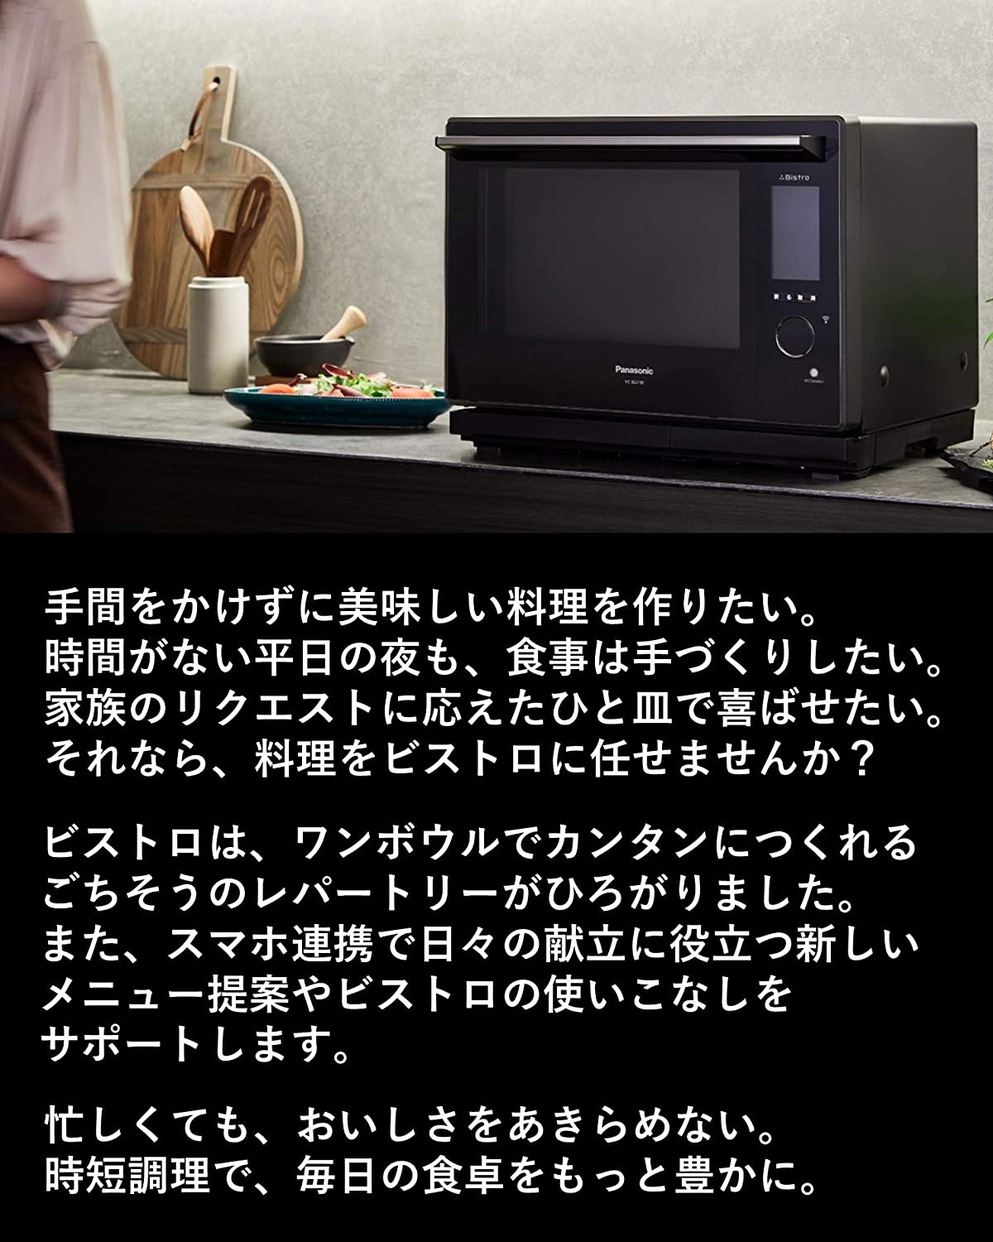 Panasonic(パナソニック) ビストロ スチームオーブンレンジ NE-BS2700の商品画像3 